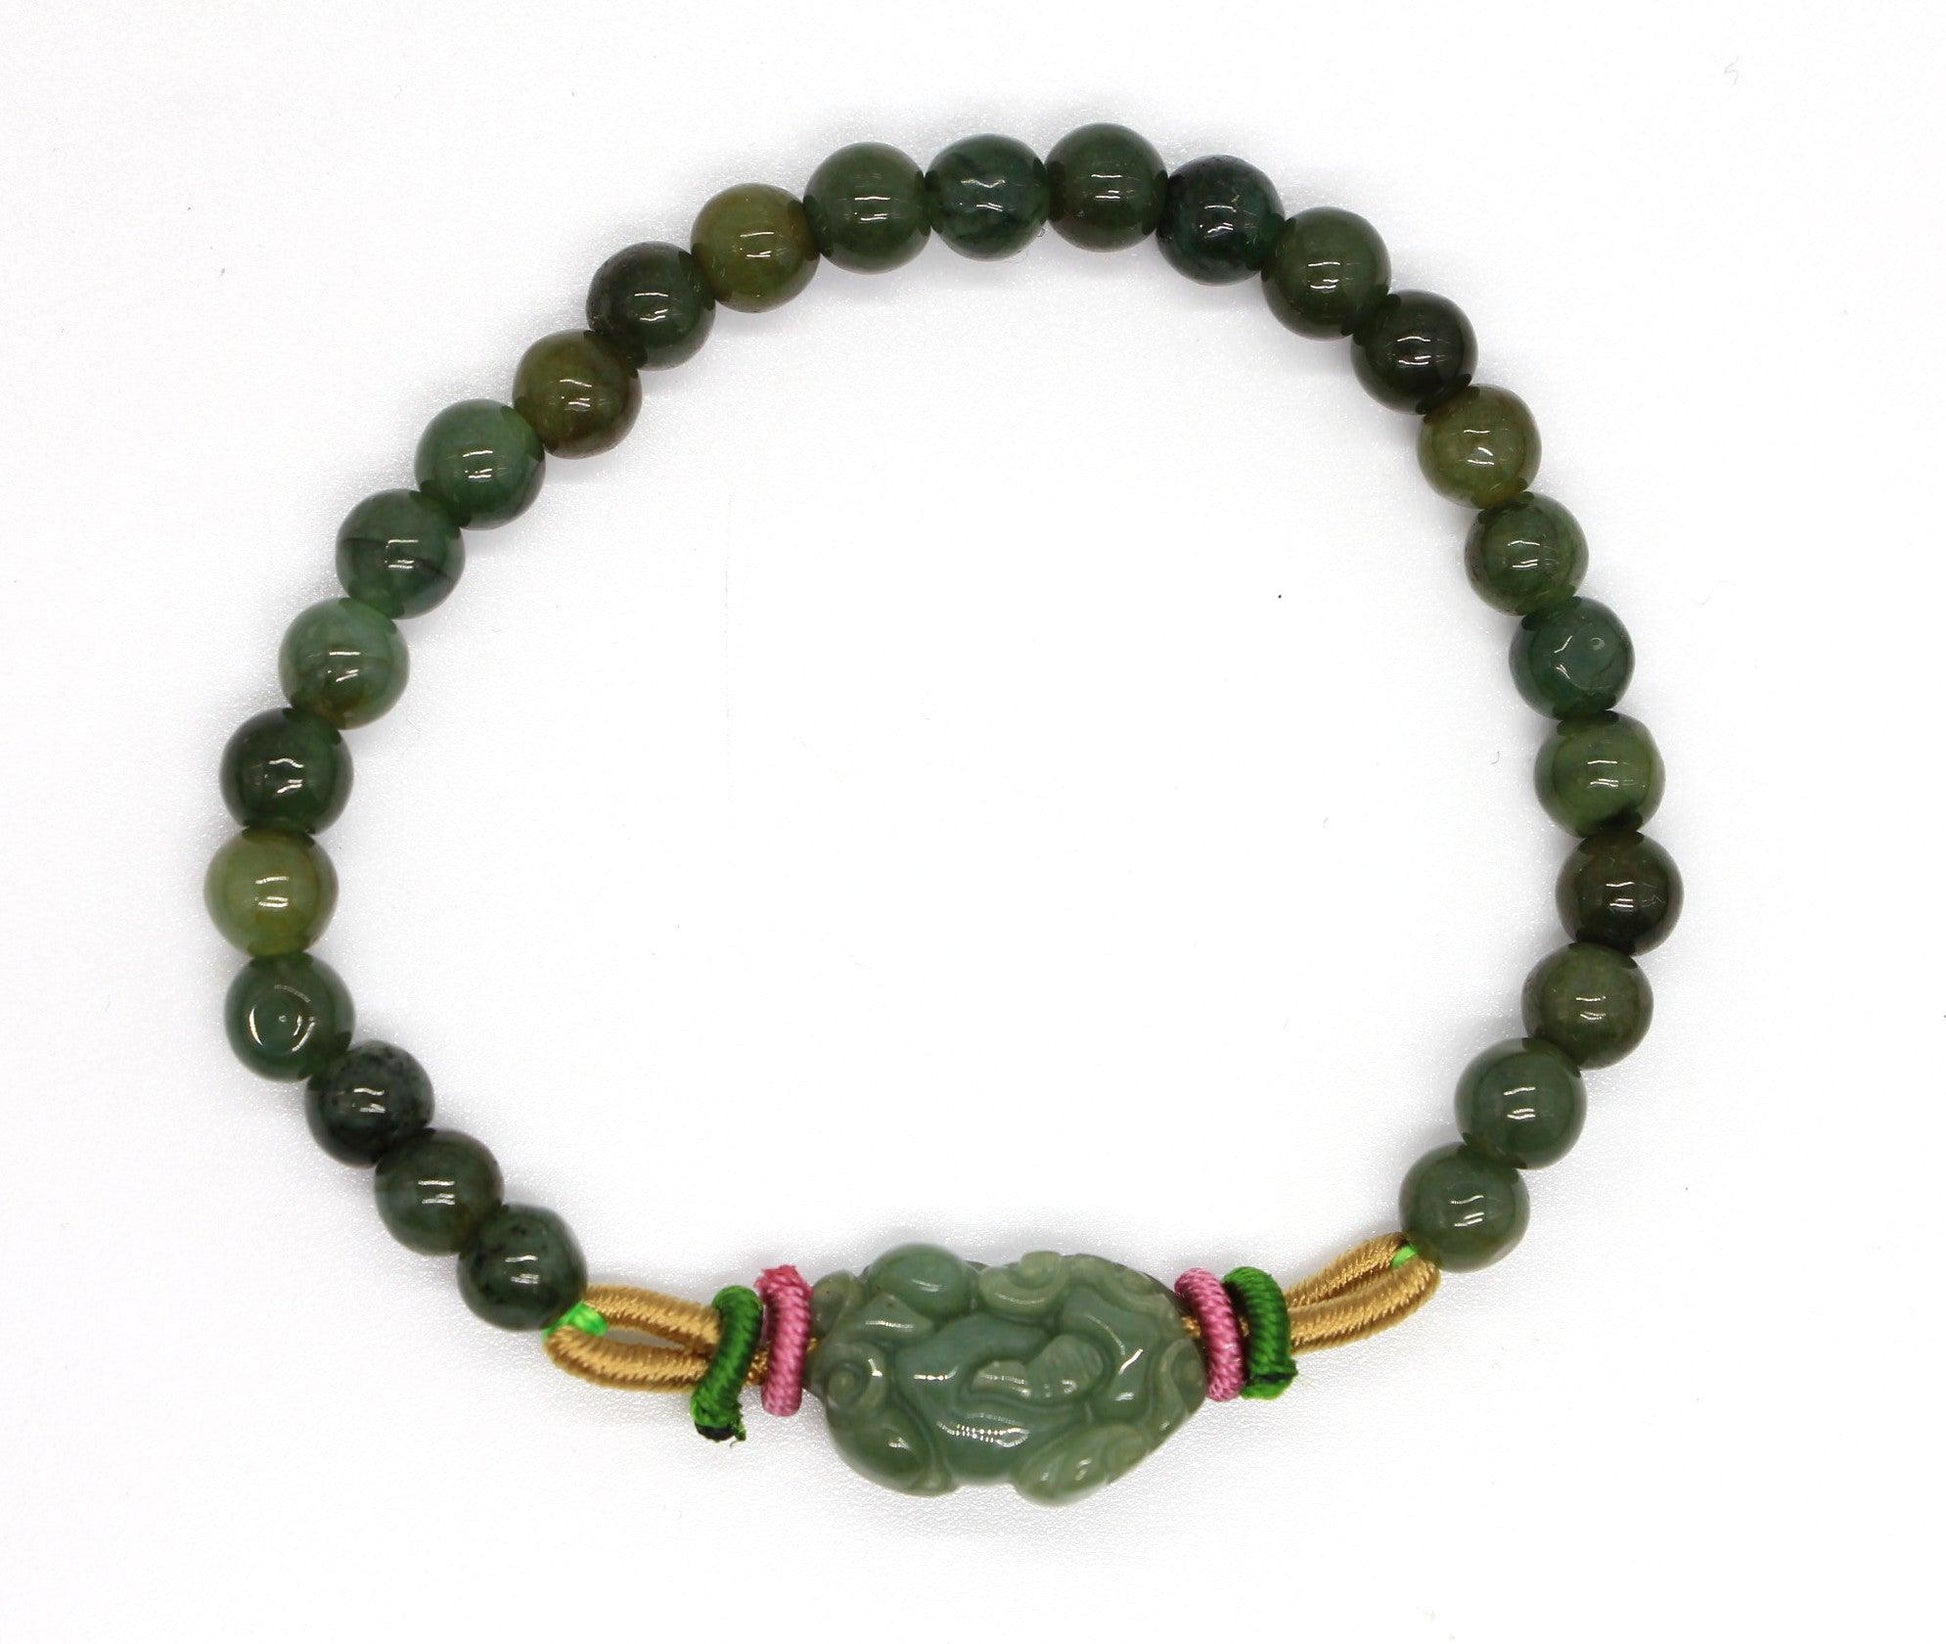 Type A Jadeite Jade Bracelet BR20004 - Jade-collector.com